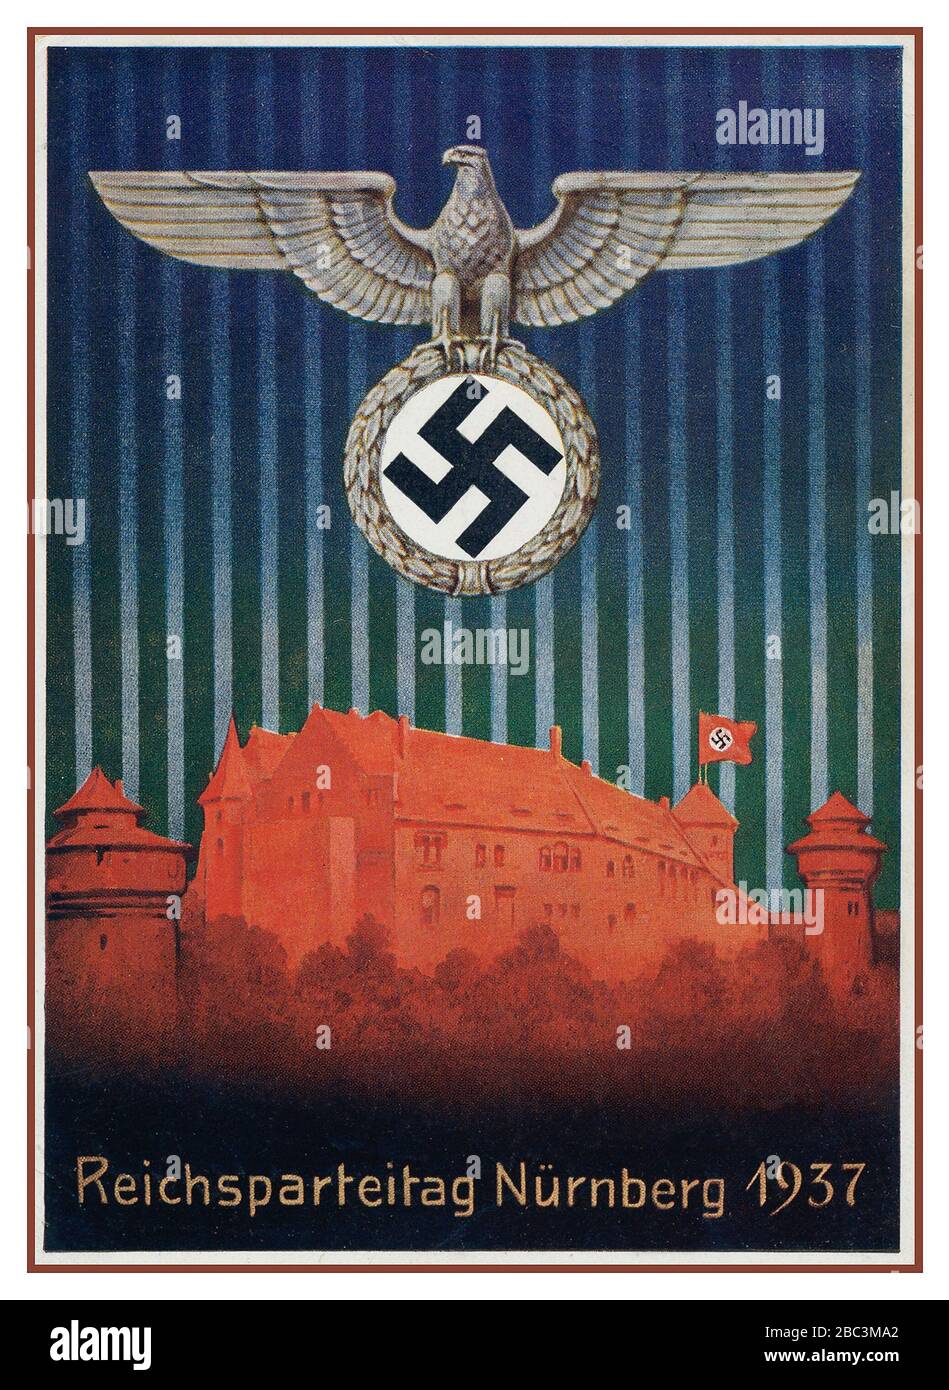 Archive affiche de la propagande nazie des années 1930 Reichsparteitag Nürnberg Allemagne avec aigle allemand tenant le symbole Swastika au-dessus du château de Nurnberg avec le drapeau Swastika voler Banque D'Images